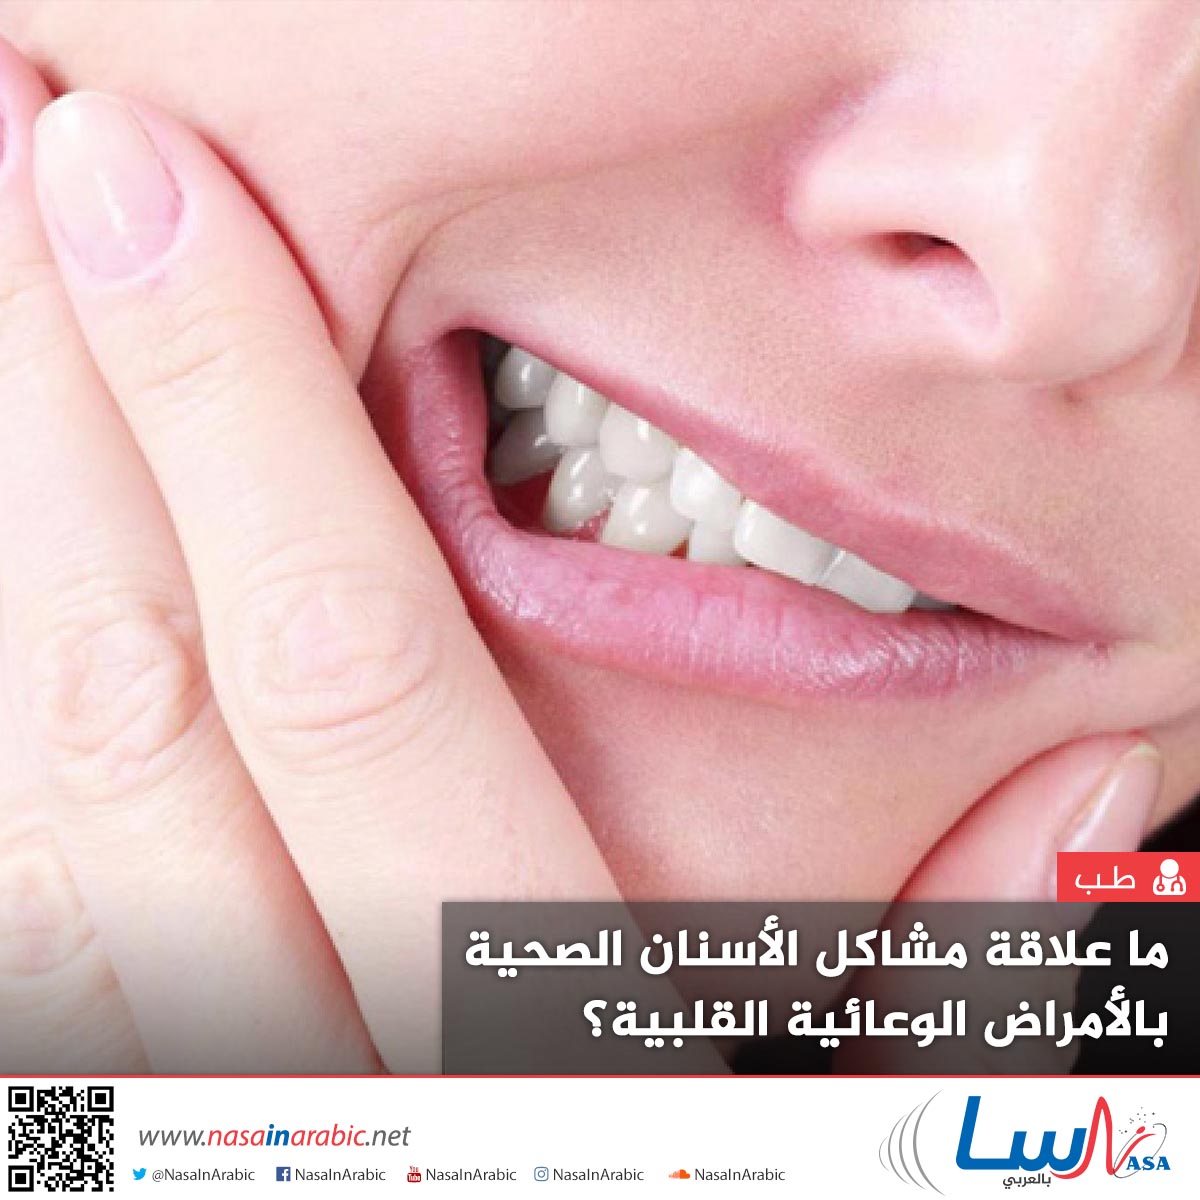 ما علاقة مشاكل الأسنان الصحية بالأمراض الوعائية القلبية؟